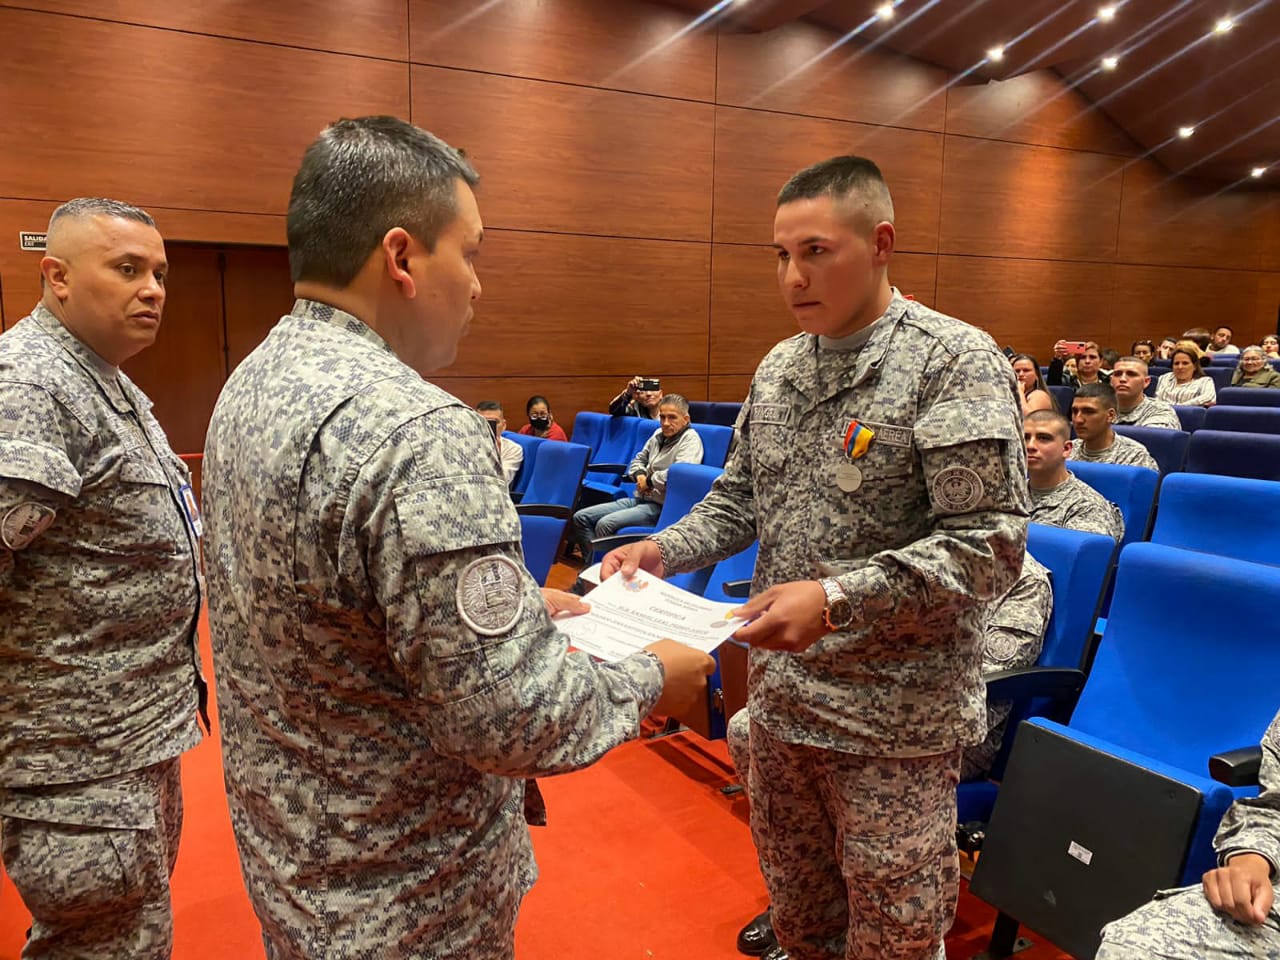 Con honores, orgullo y satisfacción solados culminaron su servicio militar en la Fuerza Aérea Colombiana